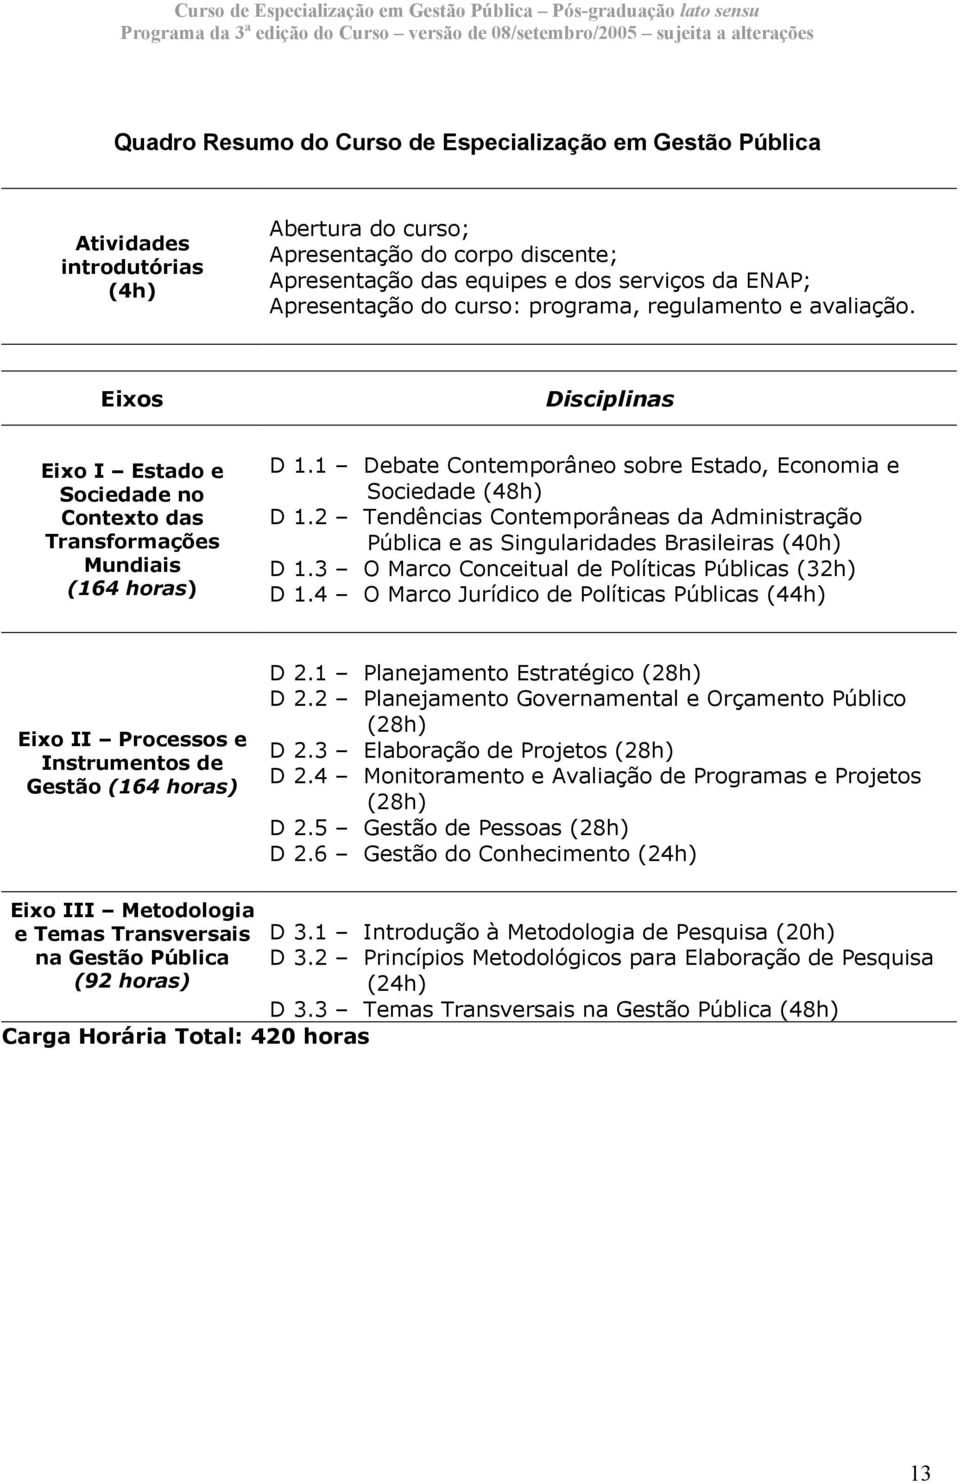 1 Debate Contemporâneo sobre Estado, Economia e Sociedade (48h) D 1.2 Tendências Contemporâneas da Administração Pública e as Singularidades Brasileiras (40h) D 1.